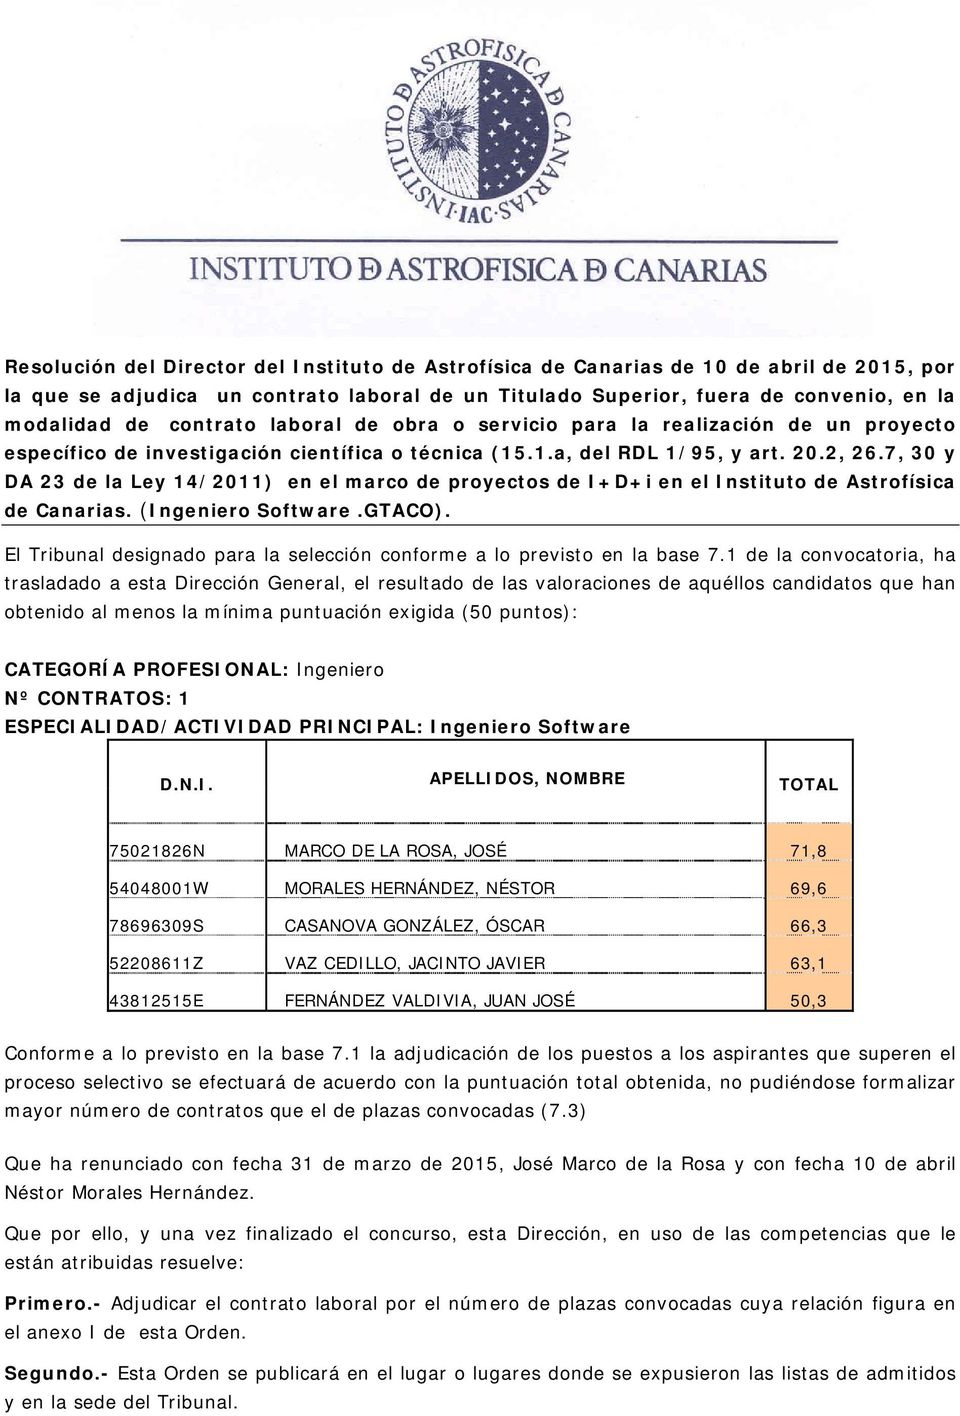 7, 30 y DA 23 de la Ley 14/2011) en el marco de proyectos de I+D+i en el Instituto de Astrofísica de Canarias. (Ingeniero Software.GTACO).